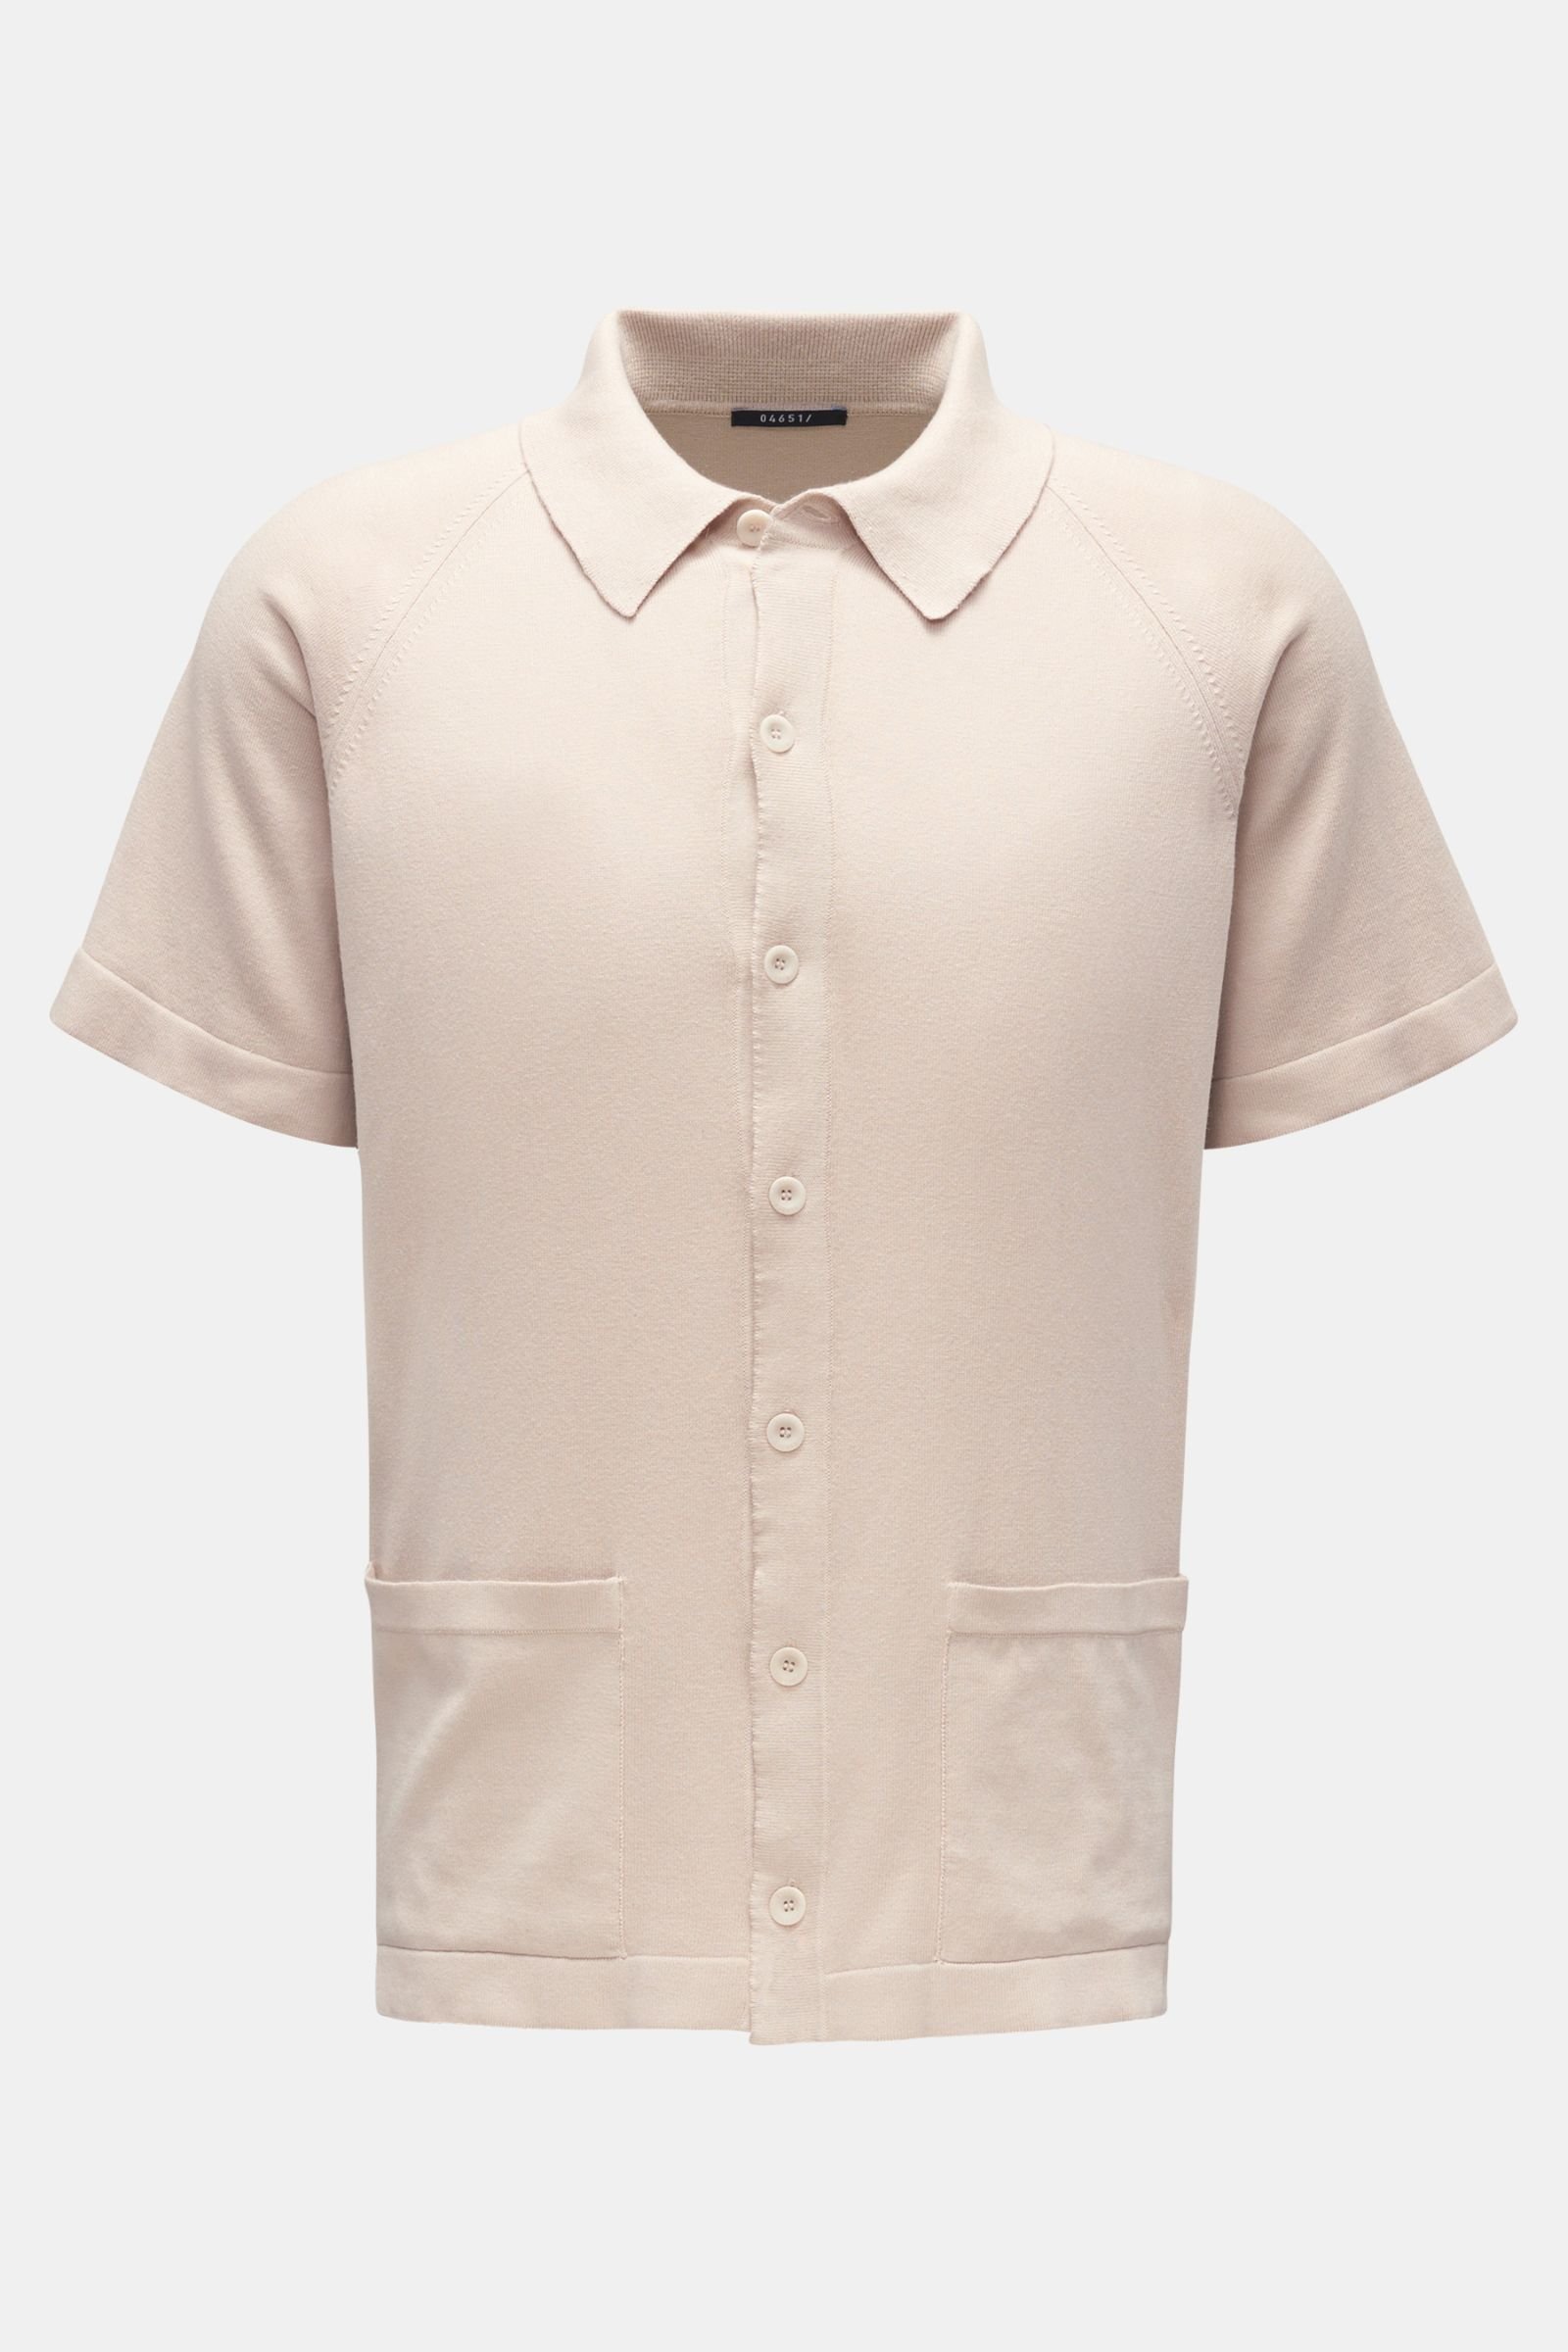 Short sleeve knit shirt 'Foggy Shirt' narrow collar beige